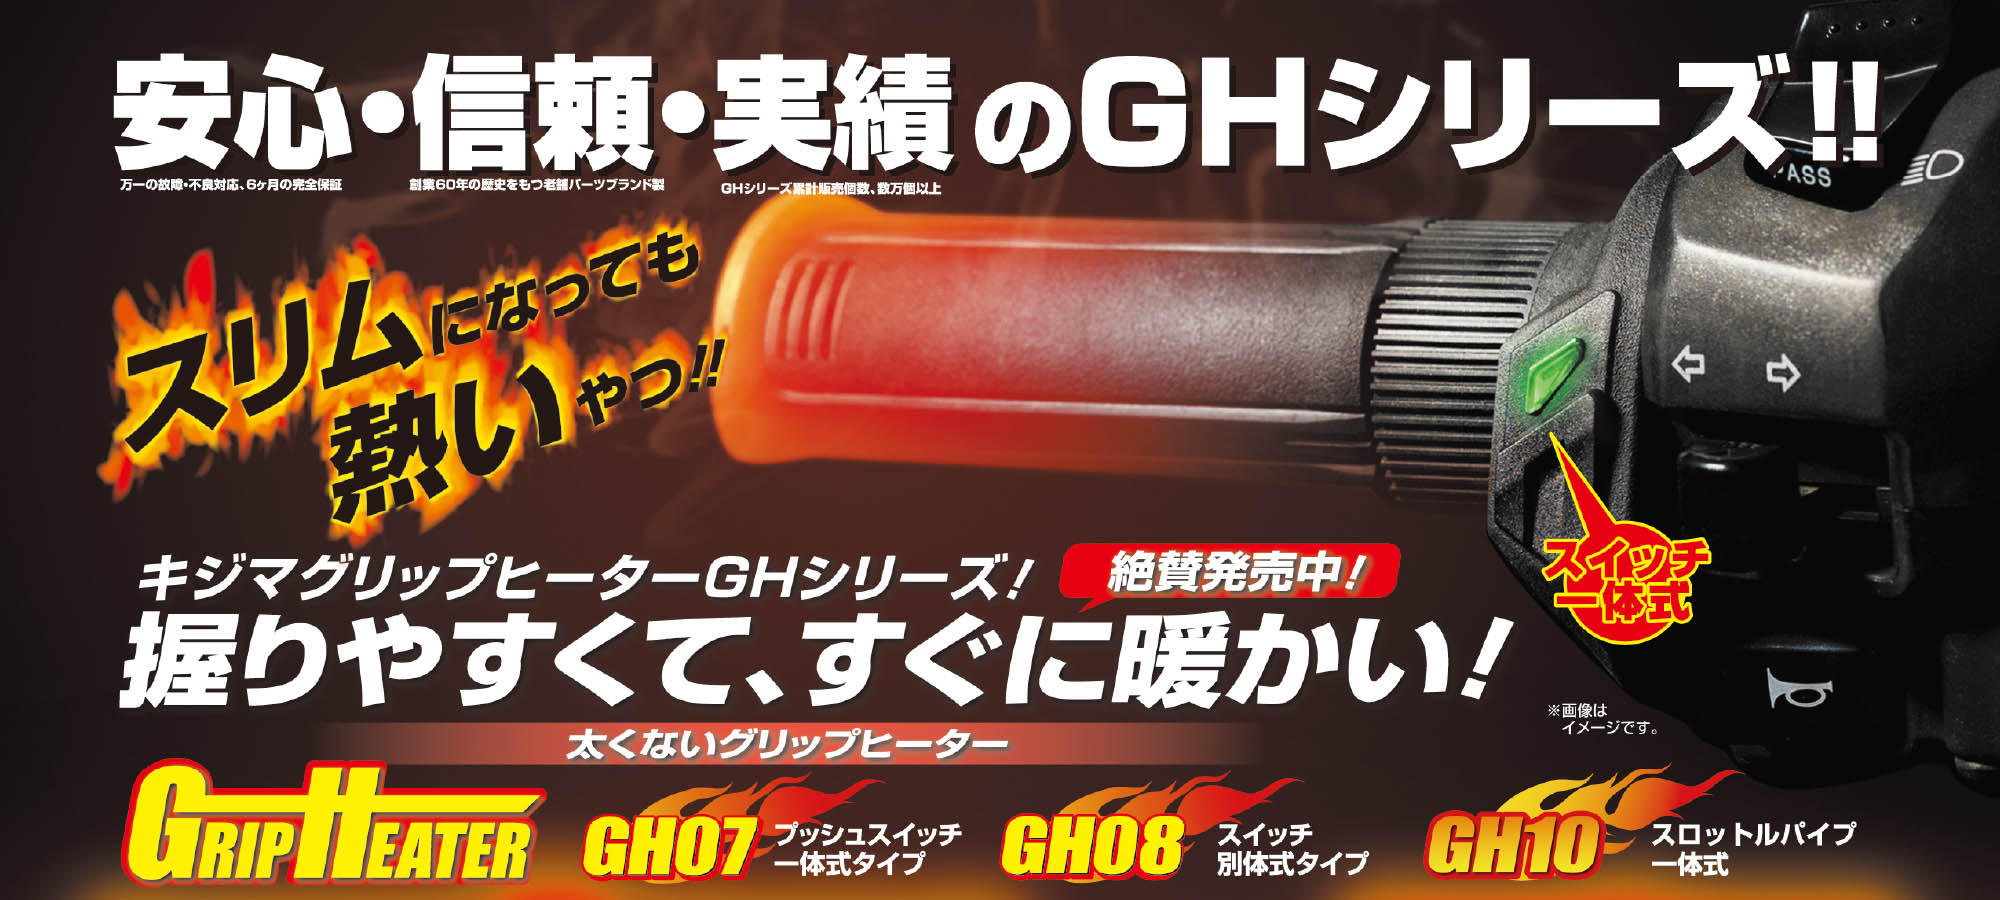 【人気商品】キジマ (kijima)バイク グリップヒーター GH08 115m